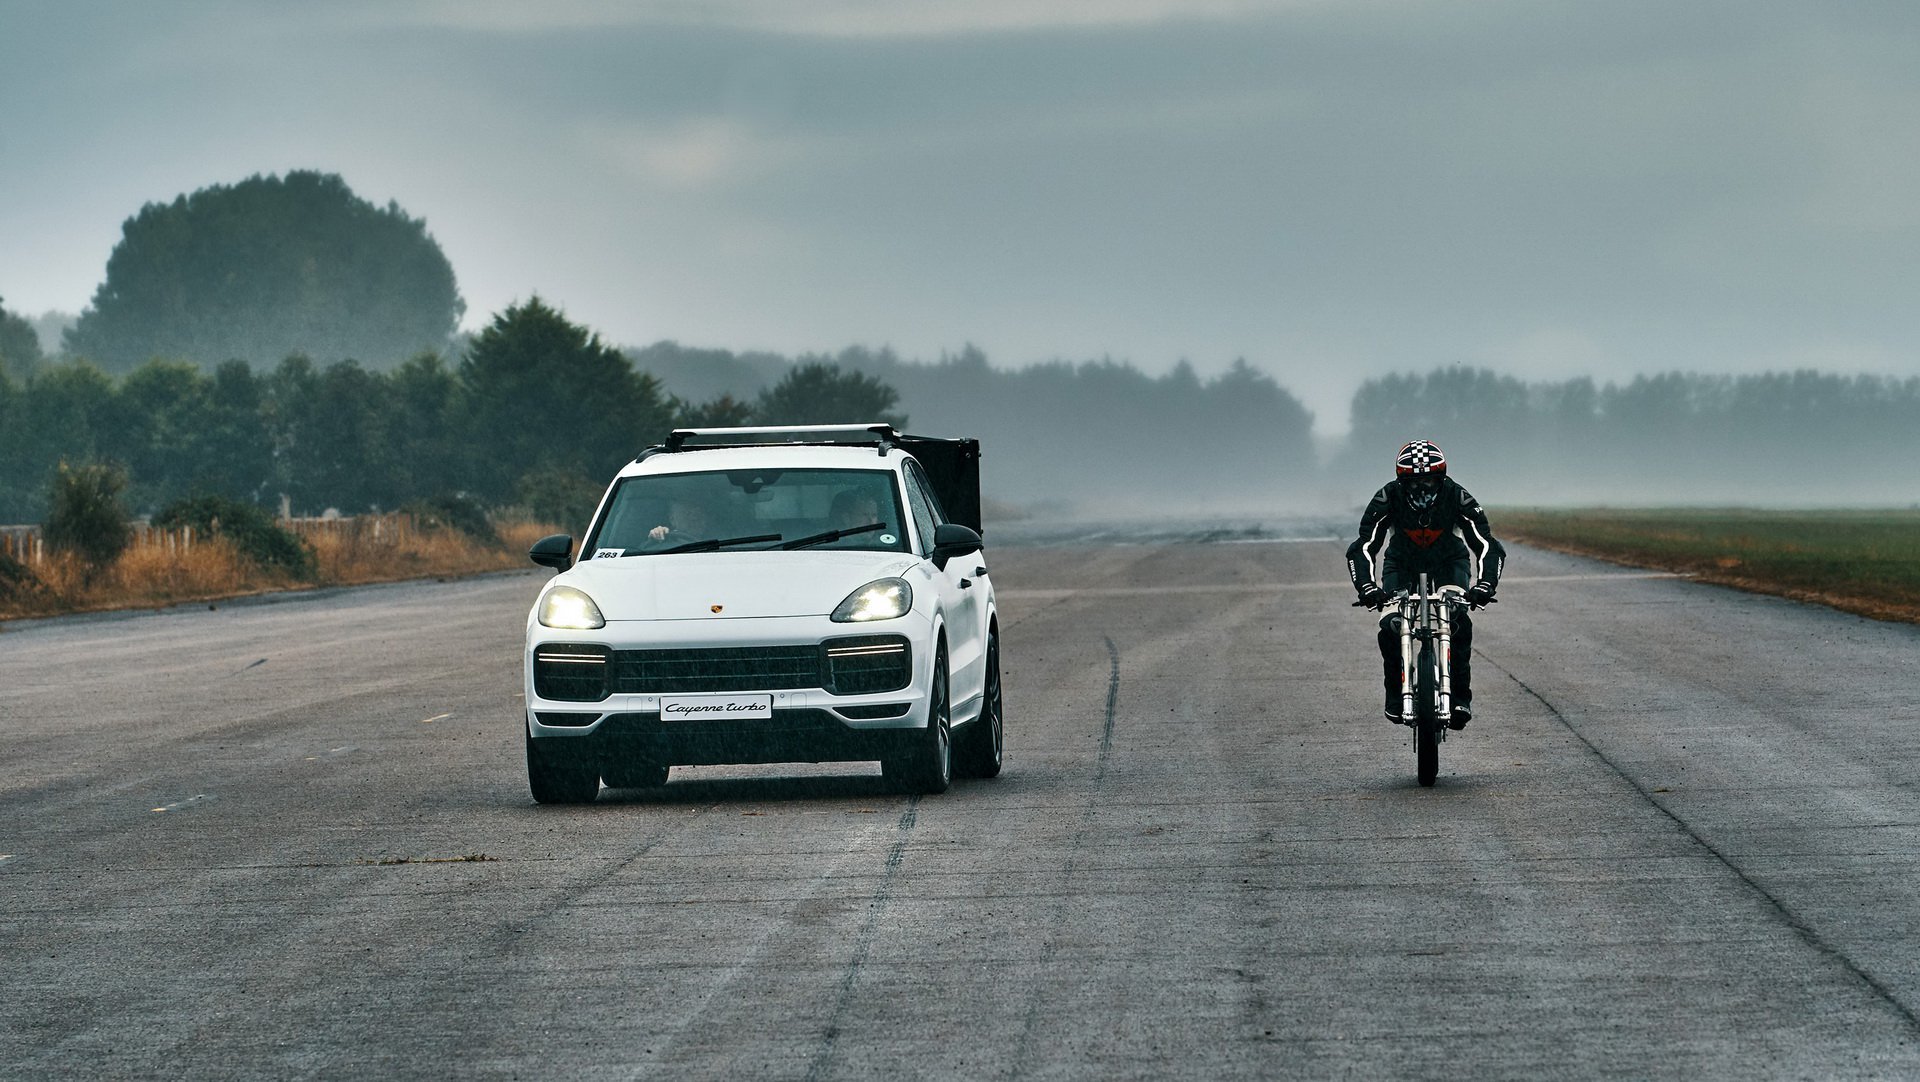 Porsche Cayenne asistovalo při ambiciozním pokusu o překonání rychlostního rekordu na kole